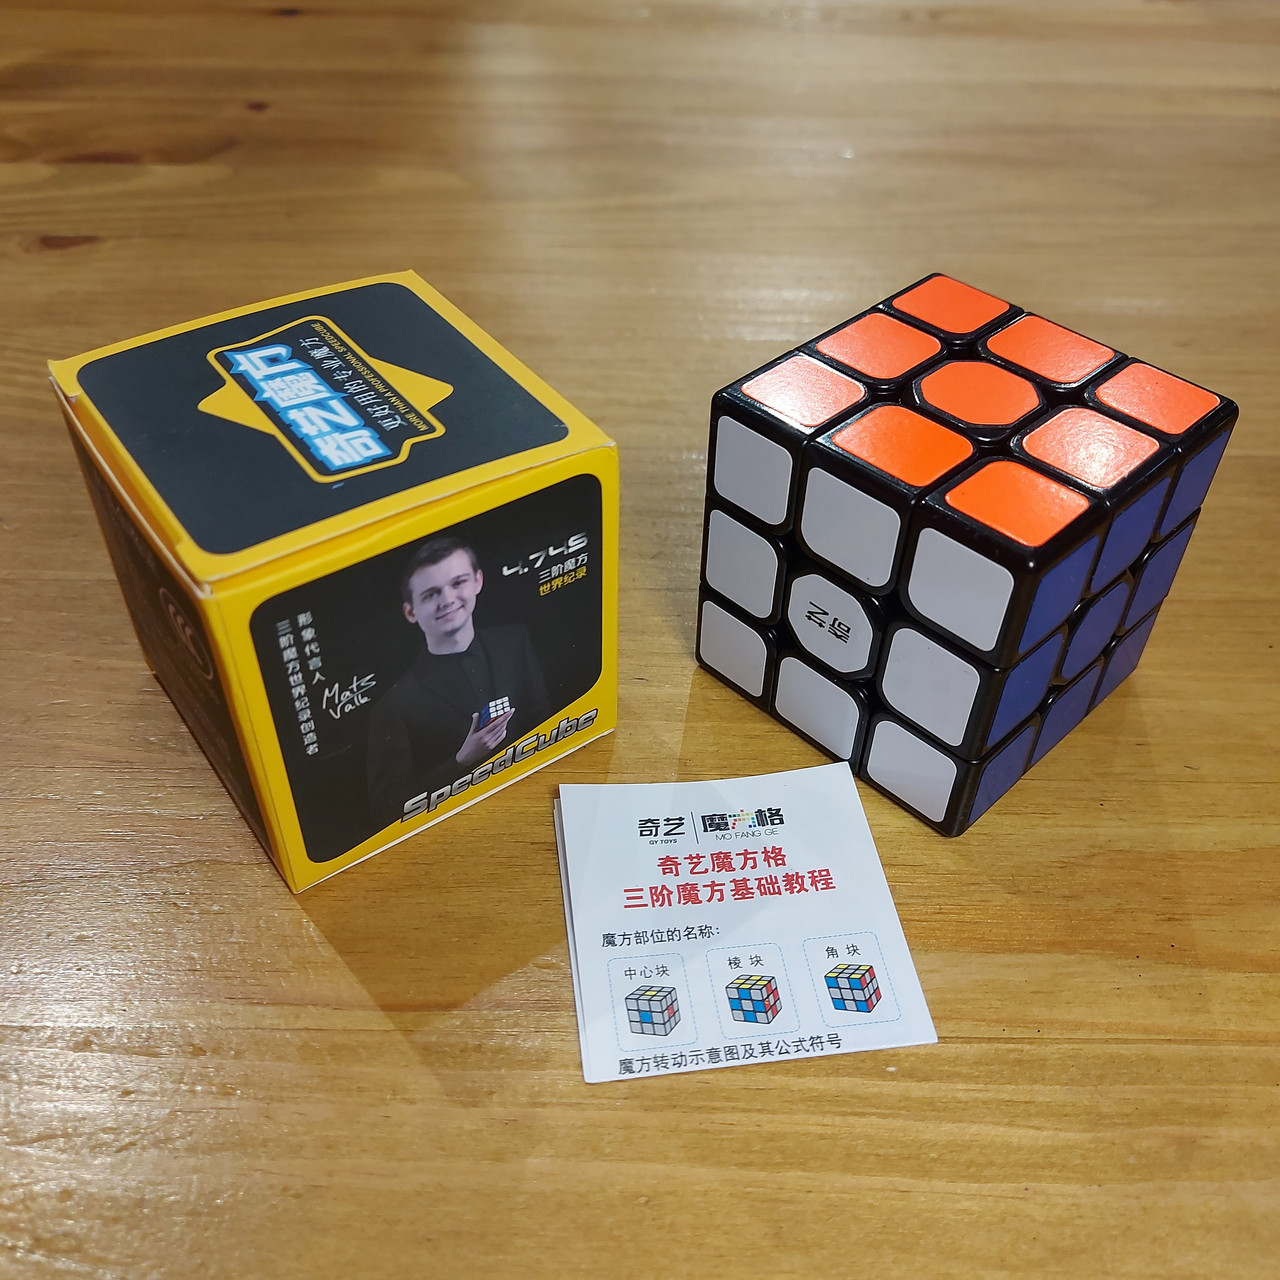 Профессиональный Кубик Рубика "Qiyi Cube" MofangGE 3X3 Sail W. Черный пластик. Куб 3 на 3. Головоломка.